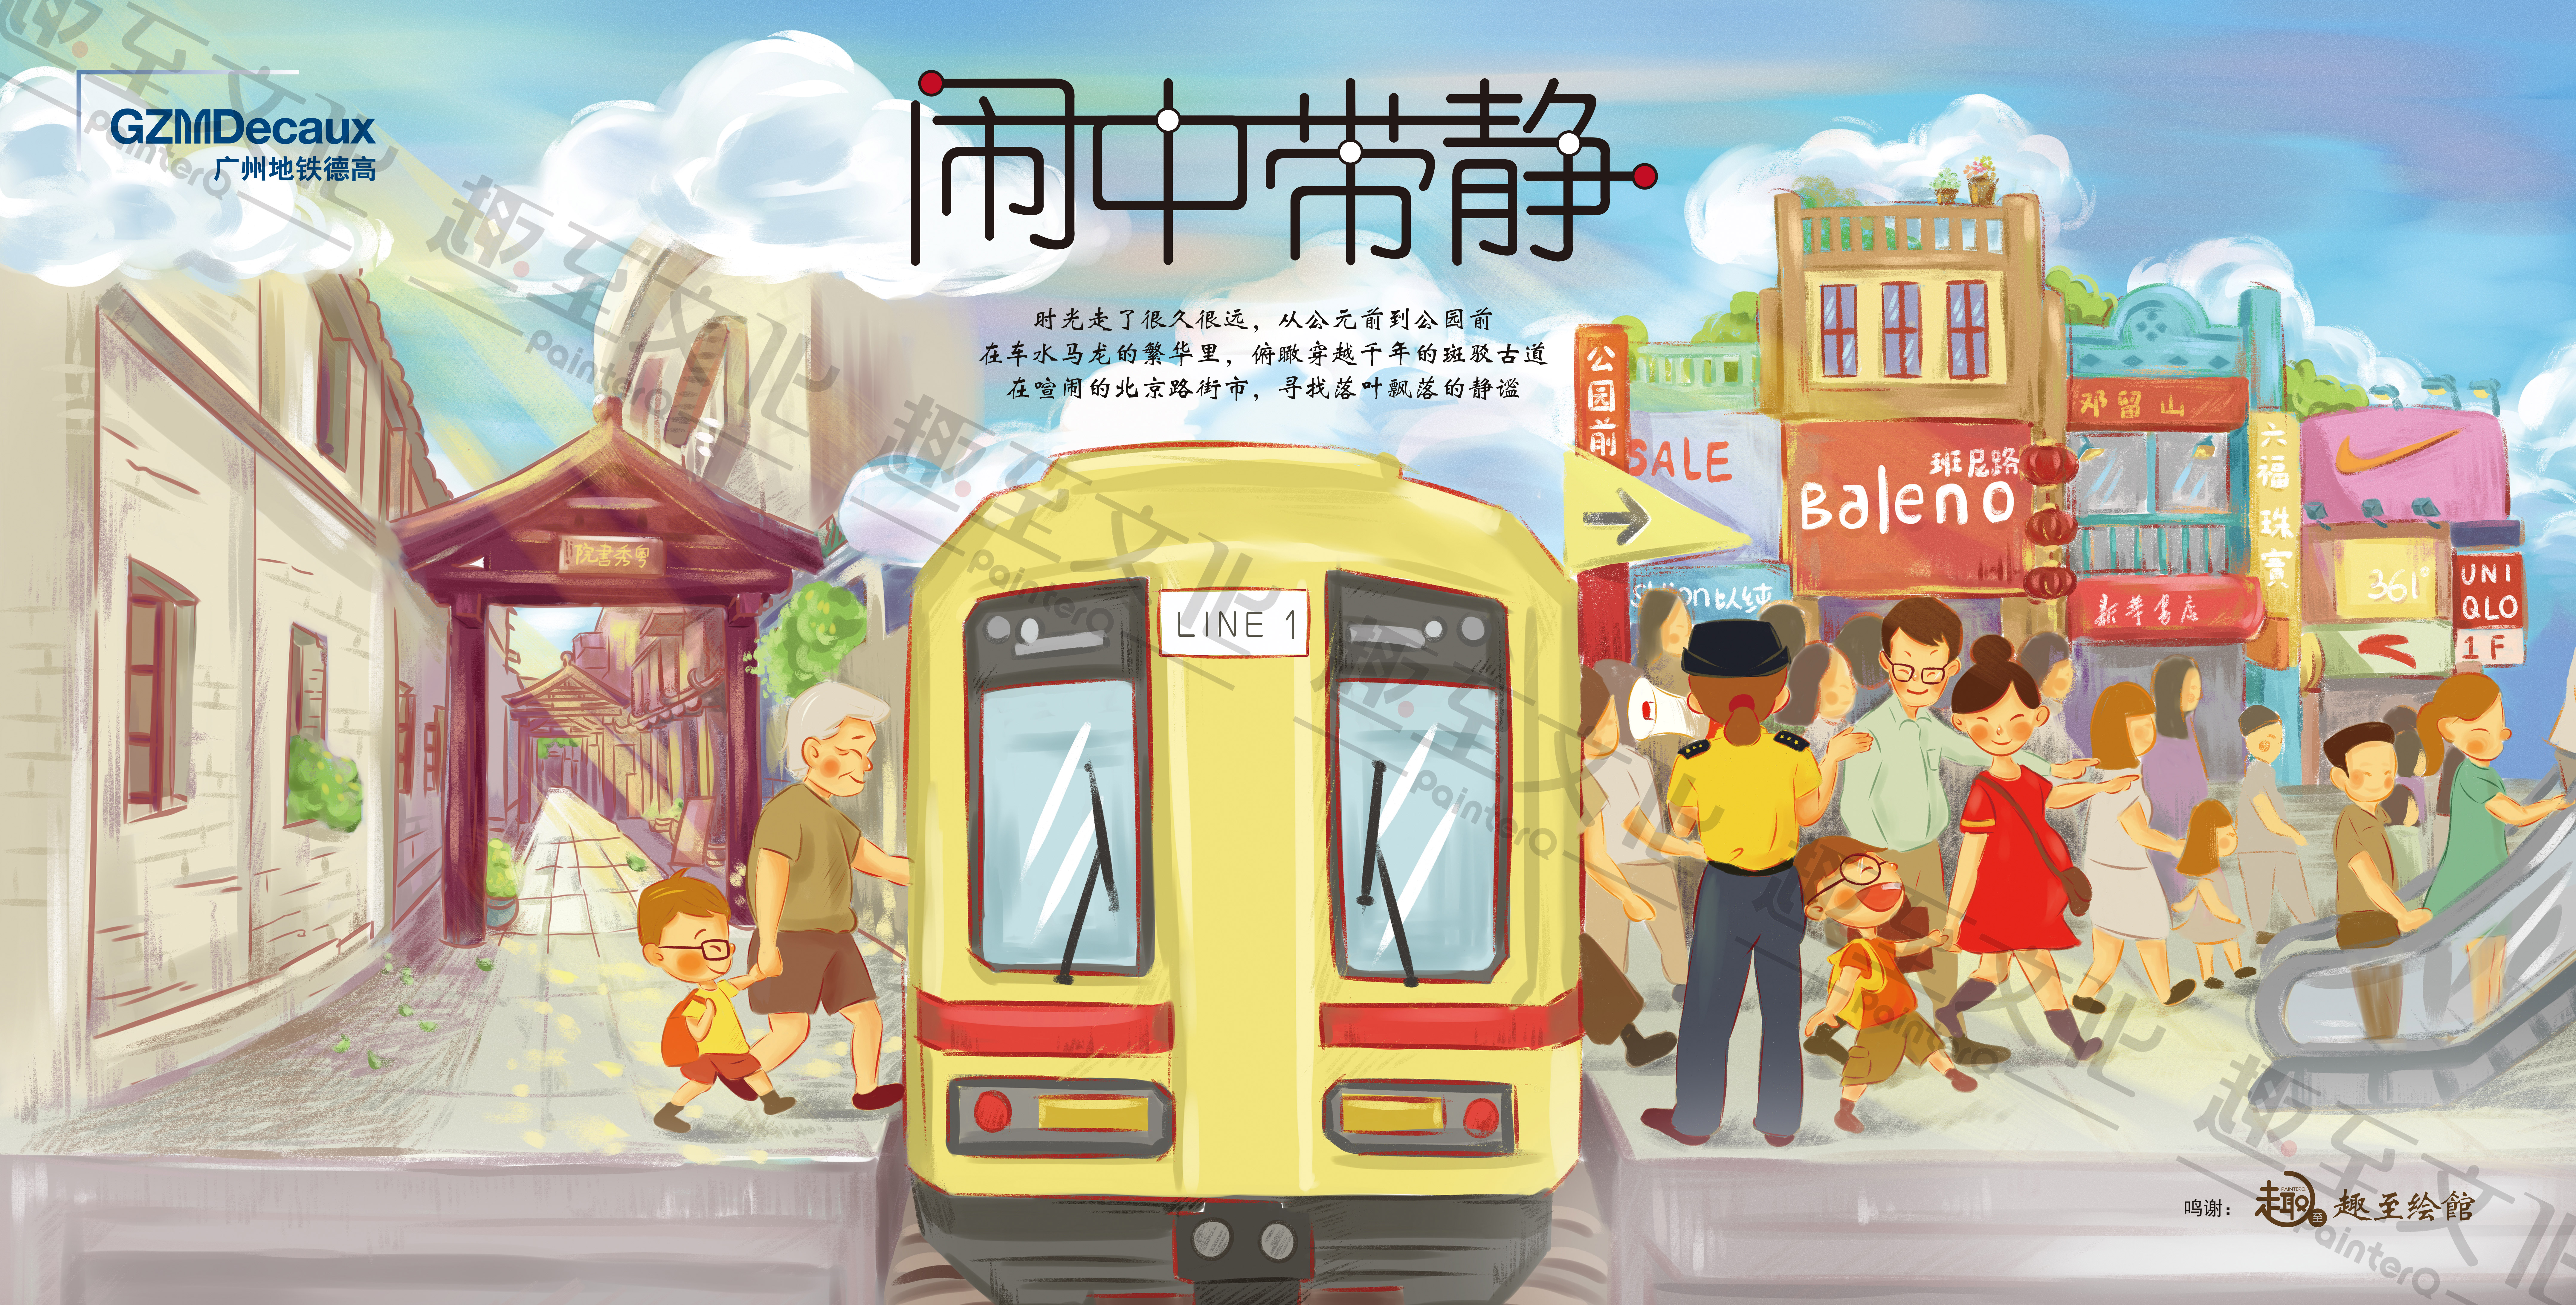 趣至文化出品:广州地铁海报